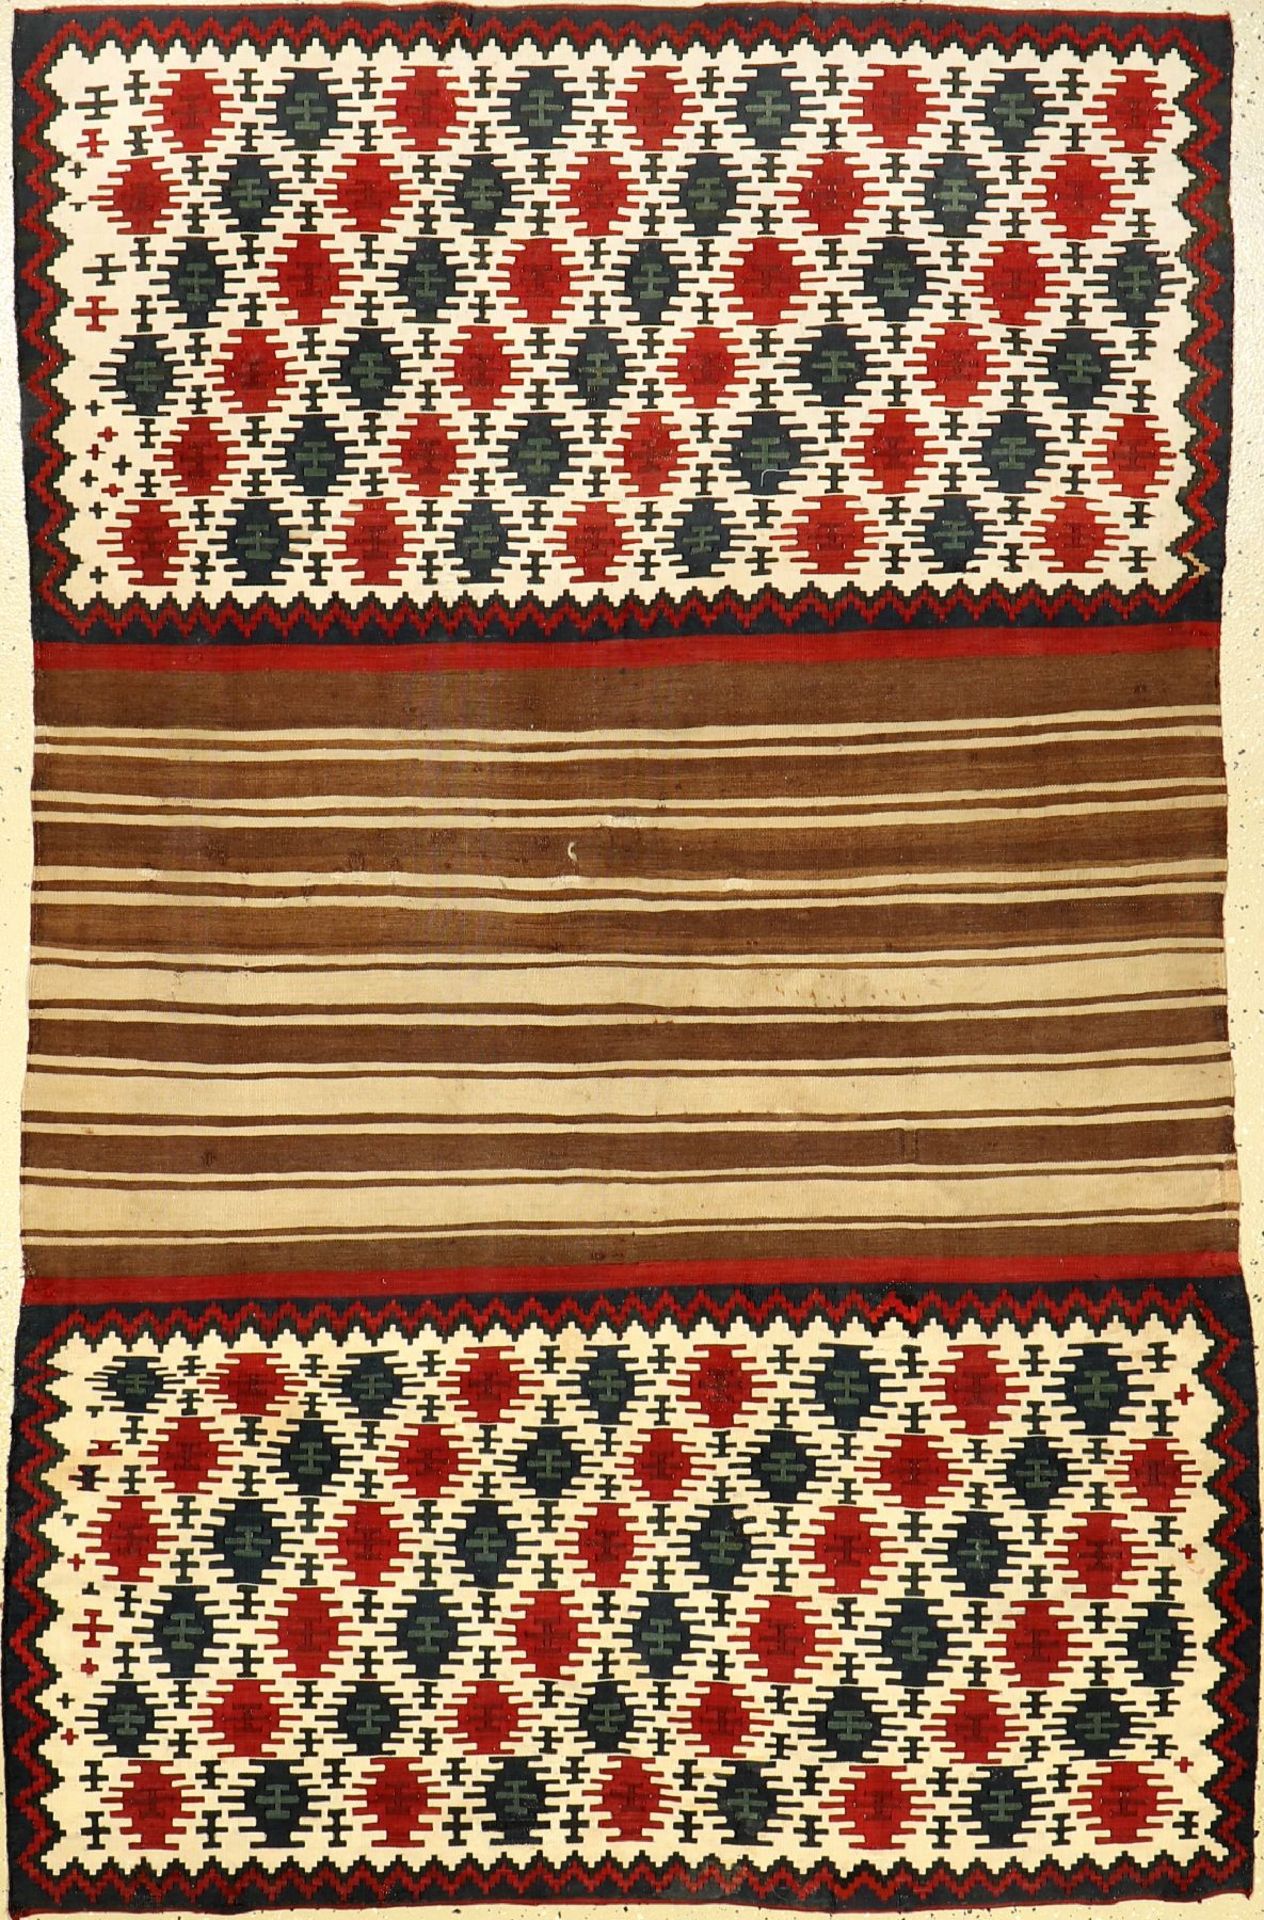 Schasavan Mafrashseiten, antik, Persien, um1900, Wolle auf Wolle, ca. 186 x 118 cm, sammelwürdig,